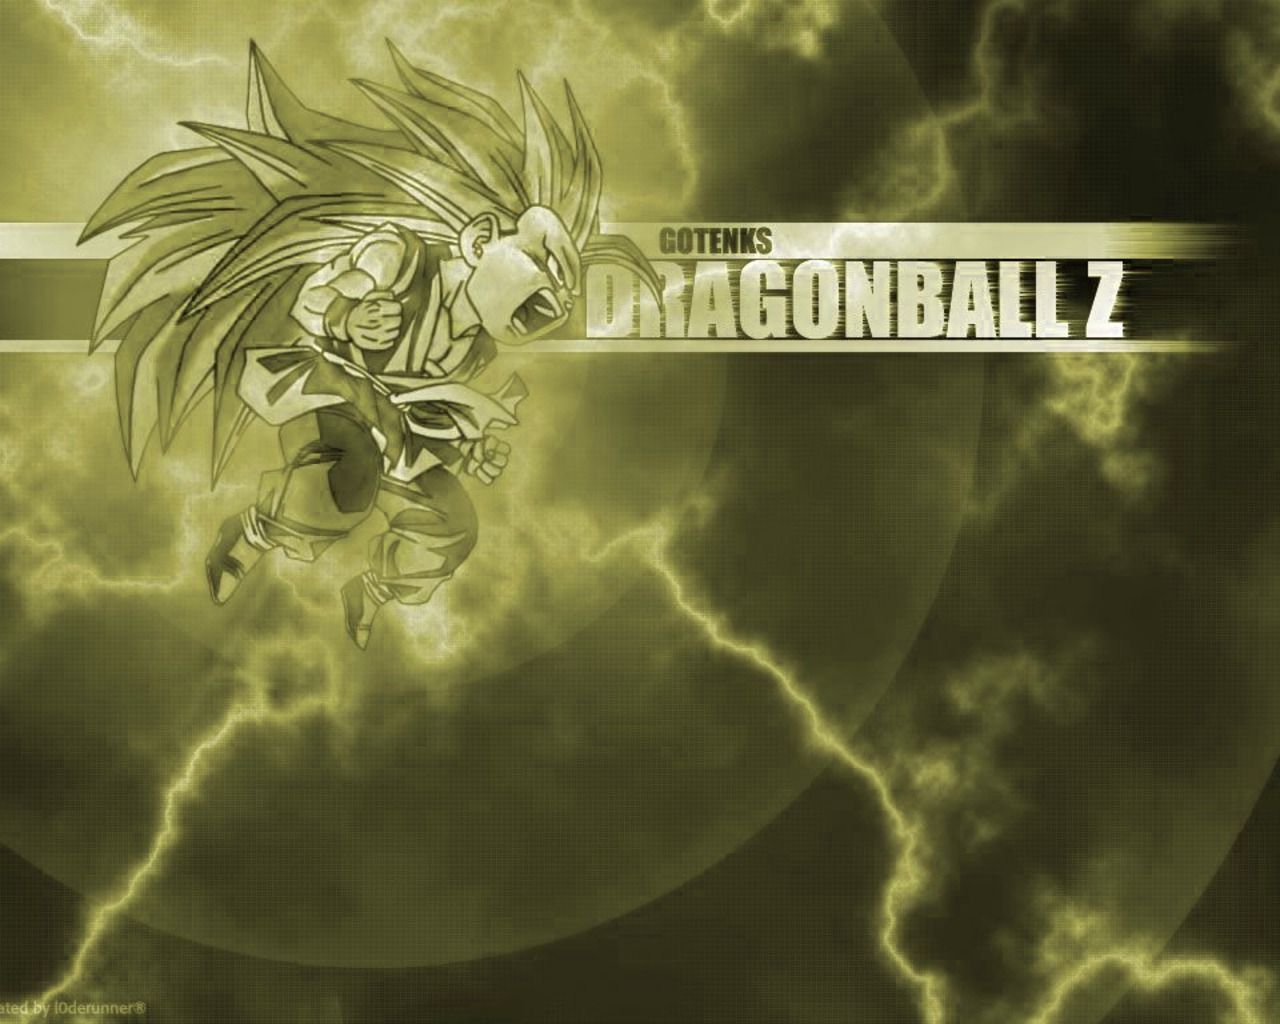 Dragonball ドラゴンボール のかっこいい壁紙画像まとめ アニメトピックス アニトピ